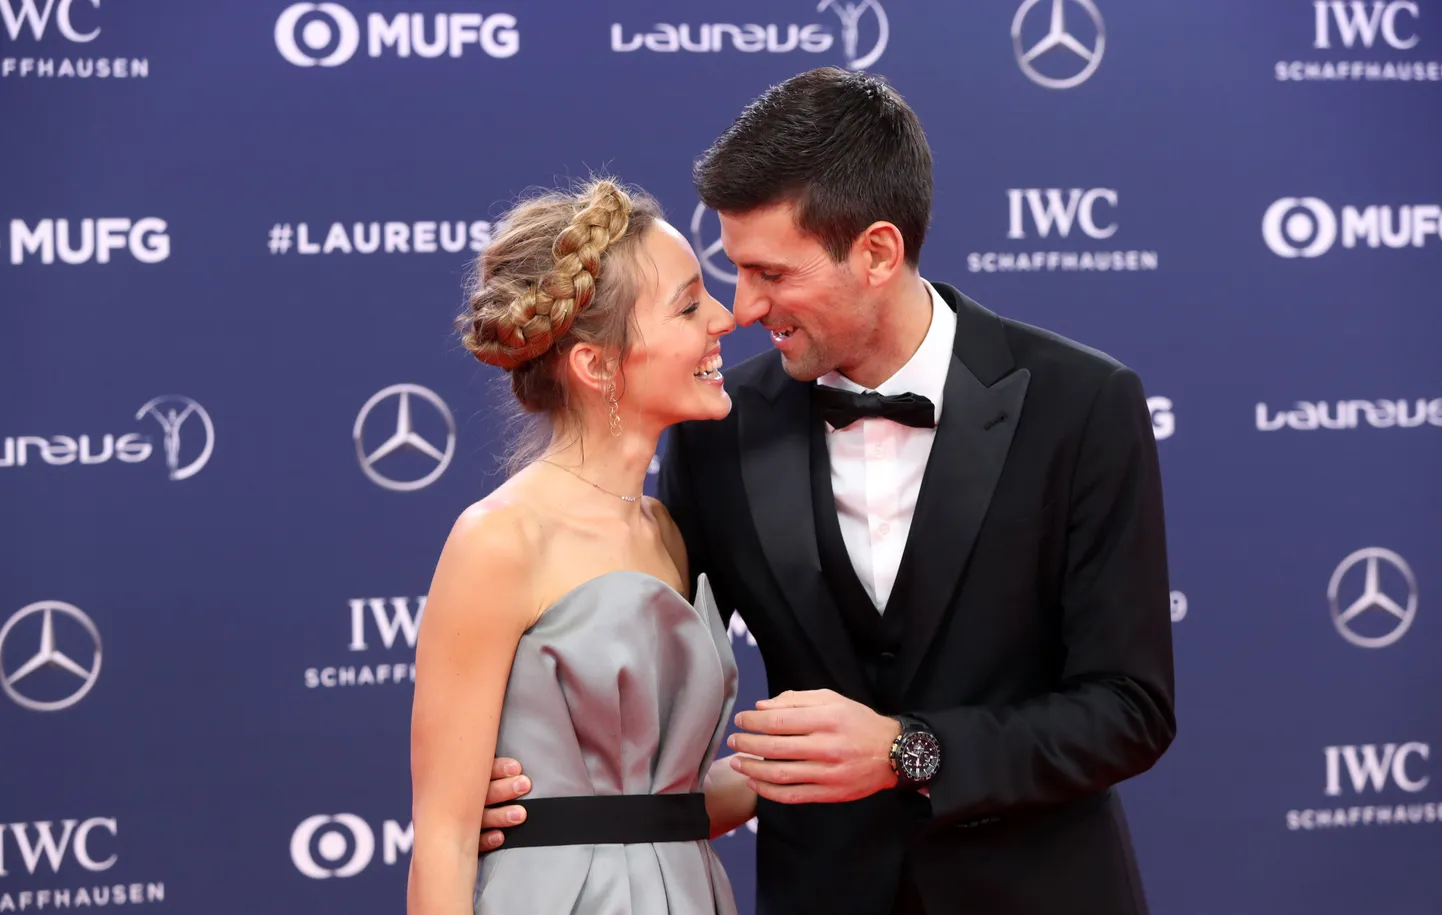 Serbian tennisetäht Novak Djokovic koos oma abikaasa Jelenaga 2019. aasta Laureuse auhindade galal.